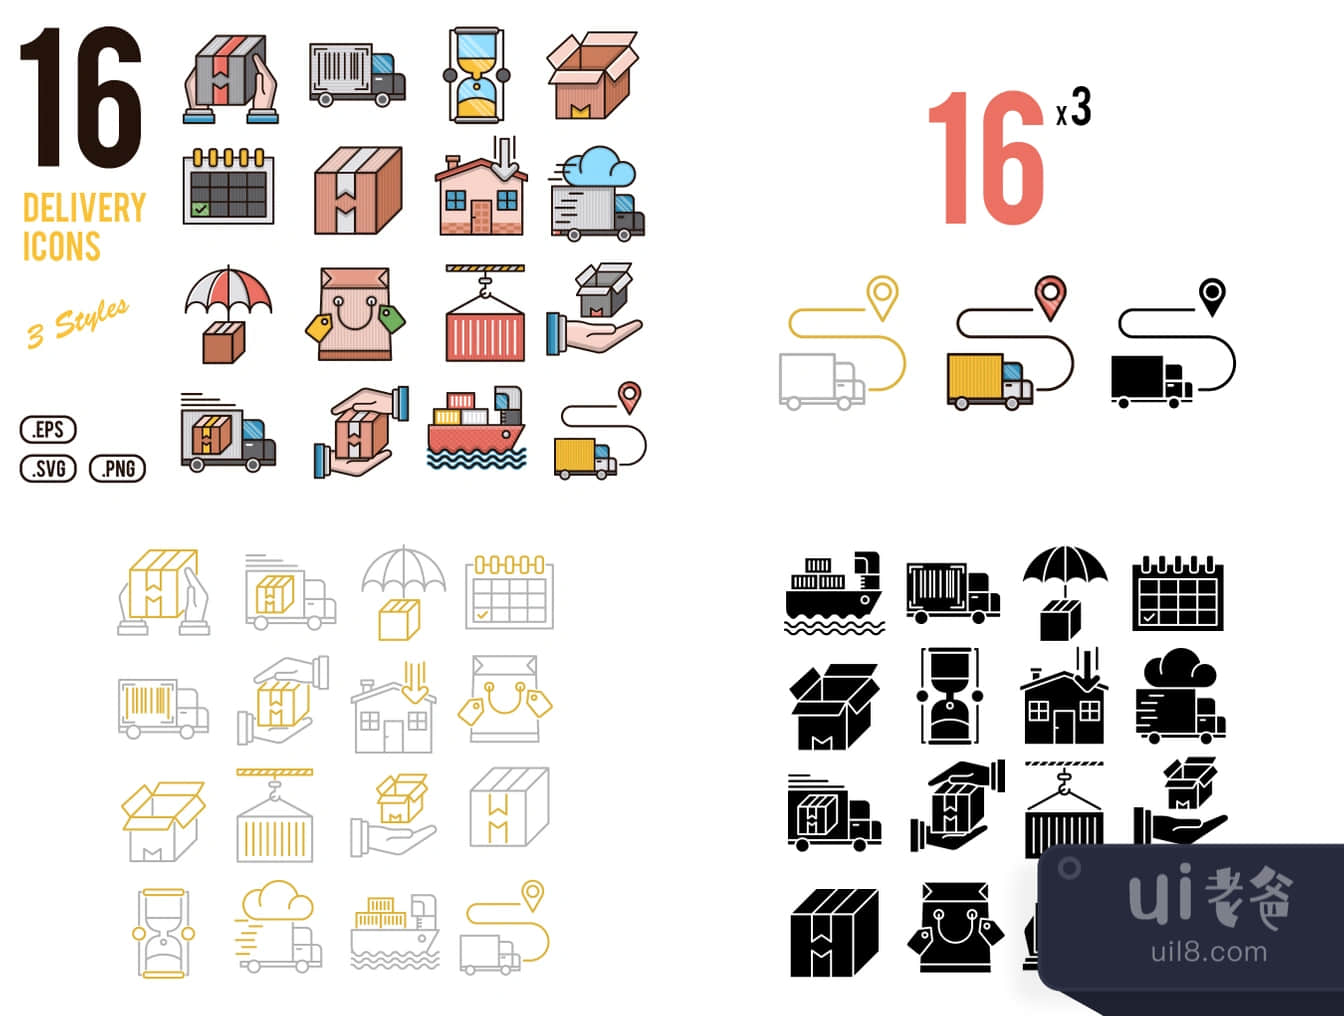 16个快递图标 (16 Delivery Icons)插图